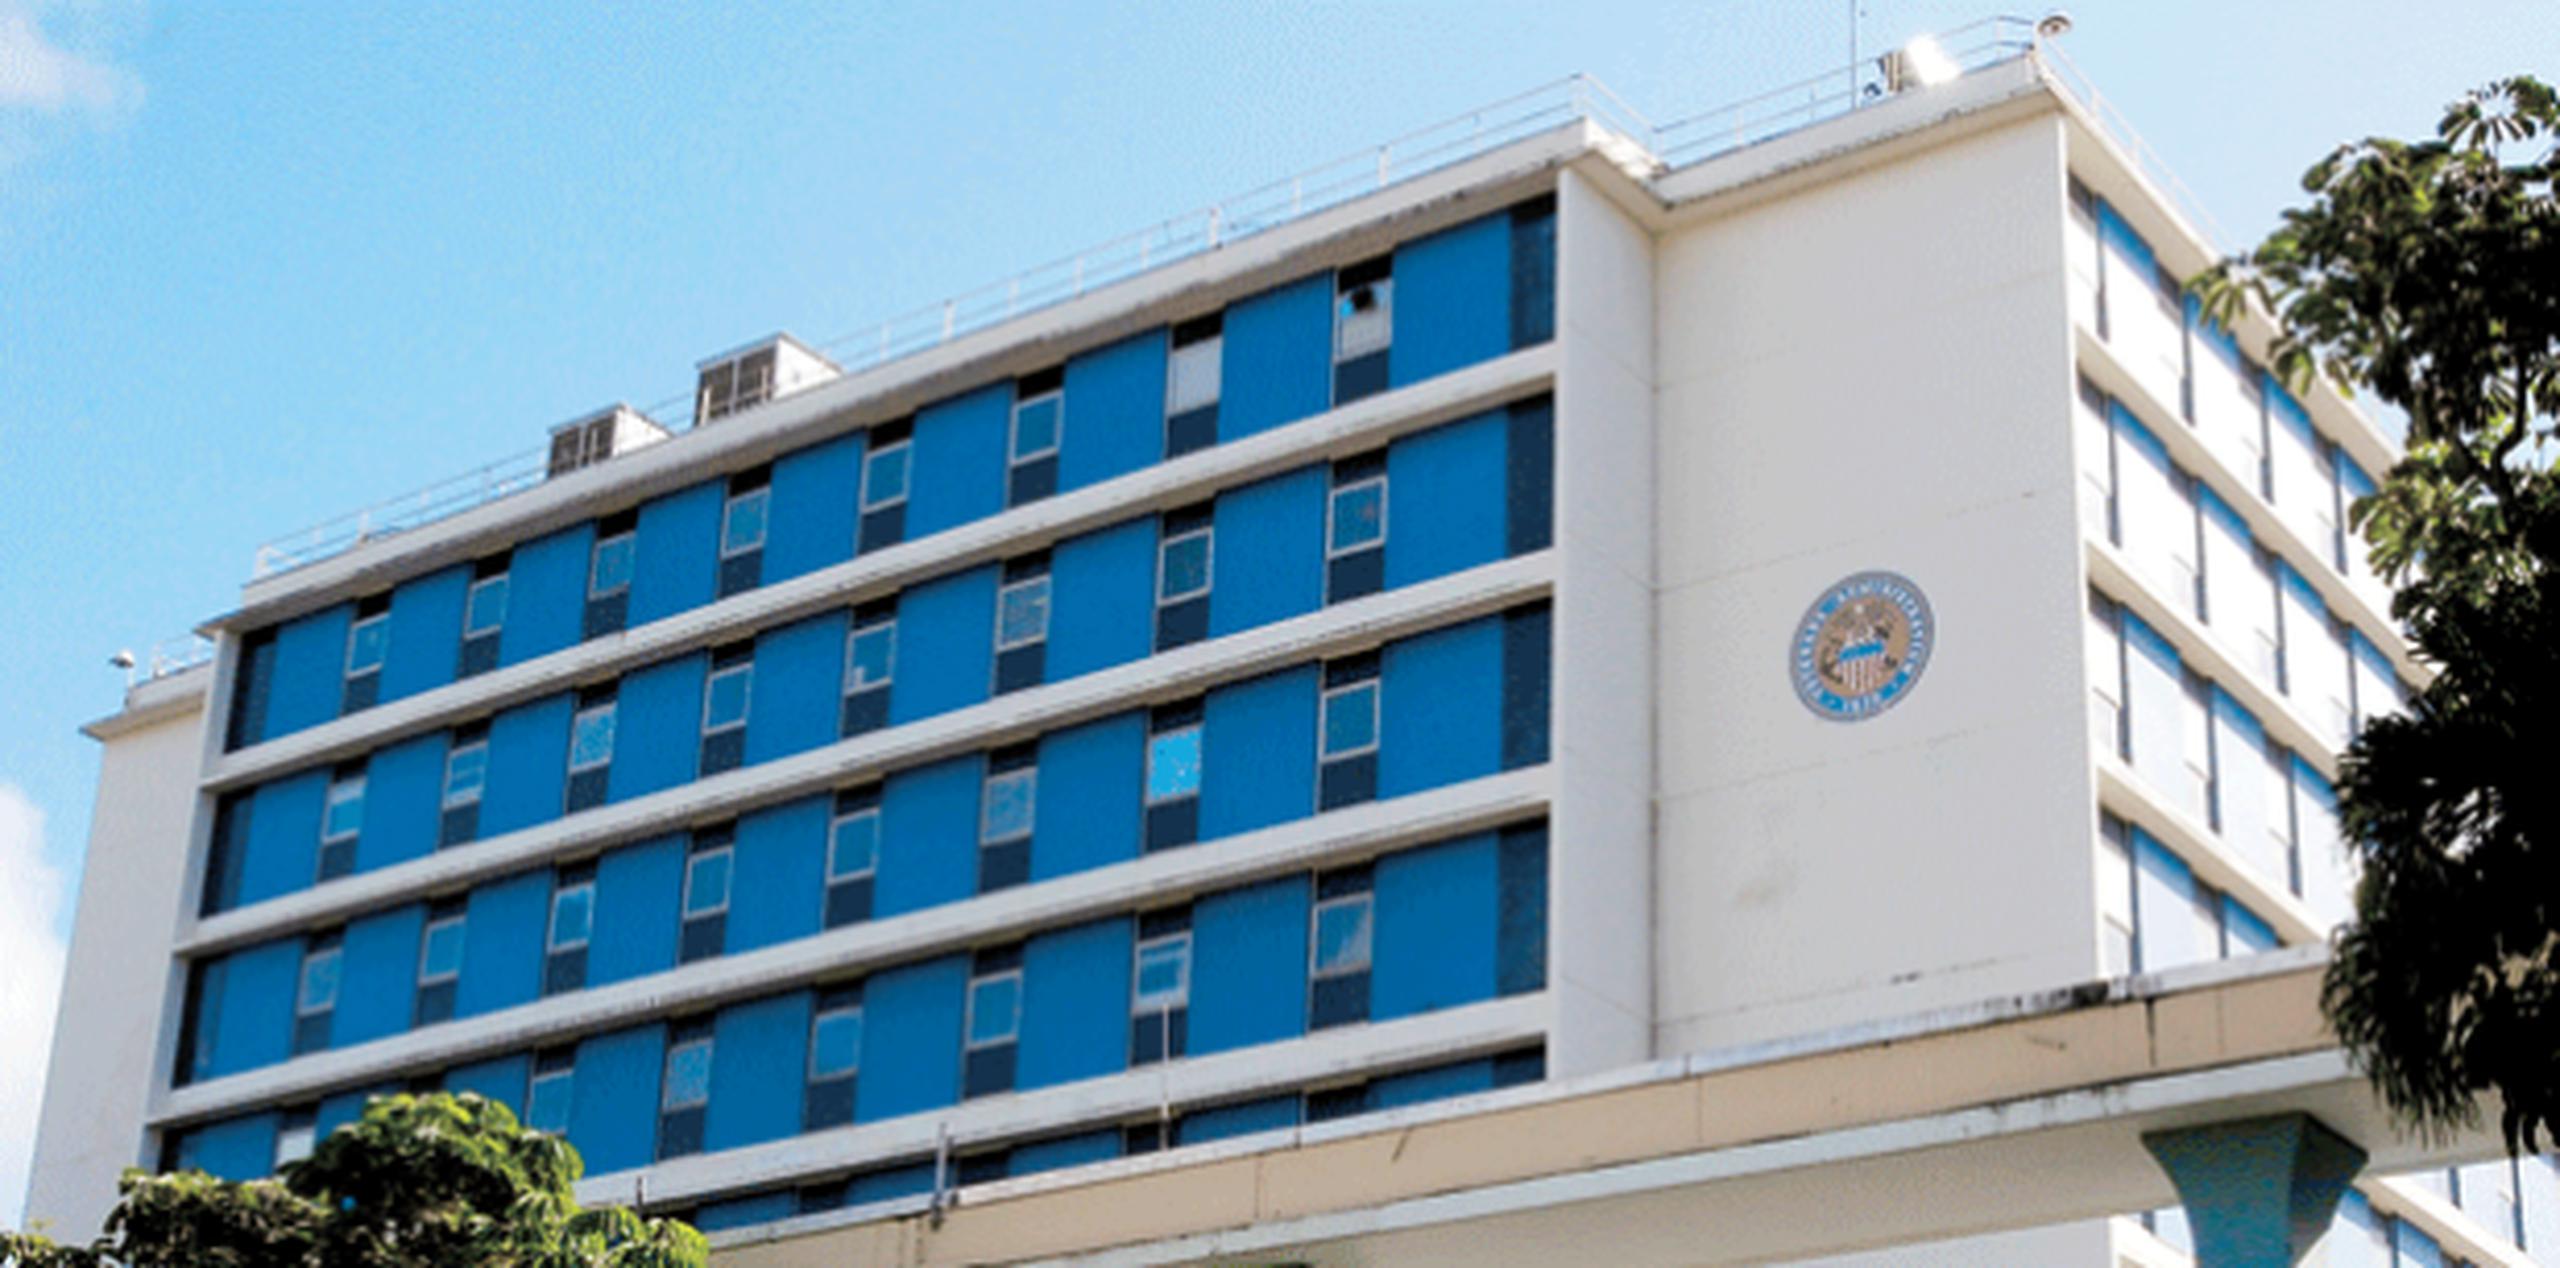 Tanto la Sala de Emergencias como los servicios para pacientes internados en la instalación hospitalaria de San Juan, están operando con normalidad. (Archivo)